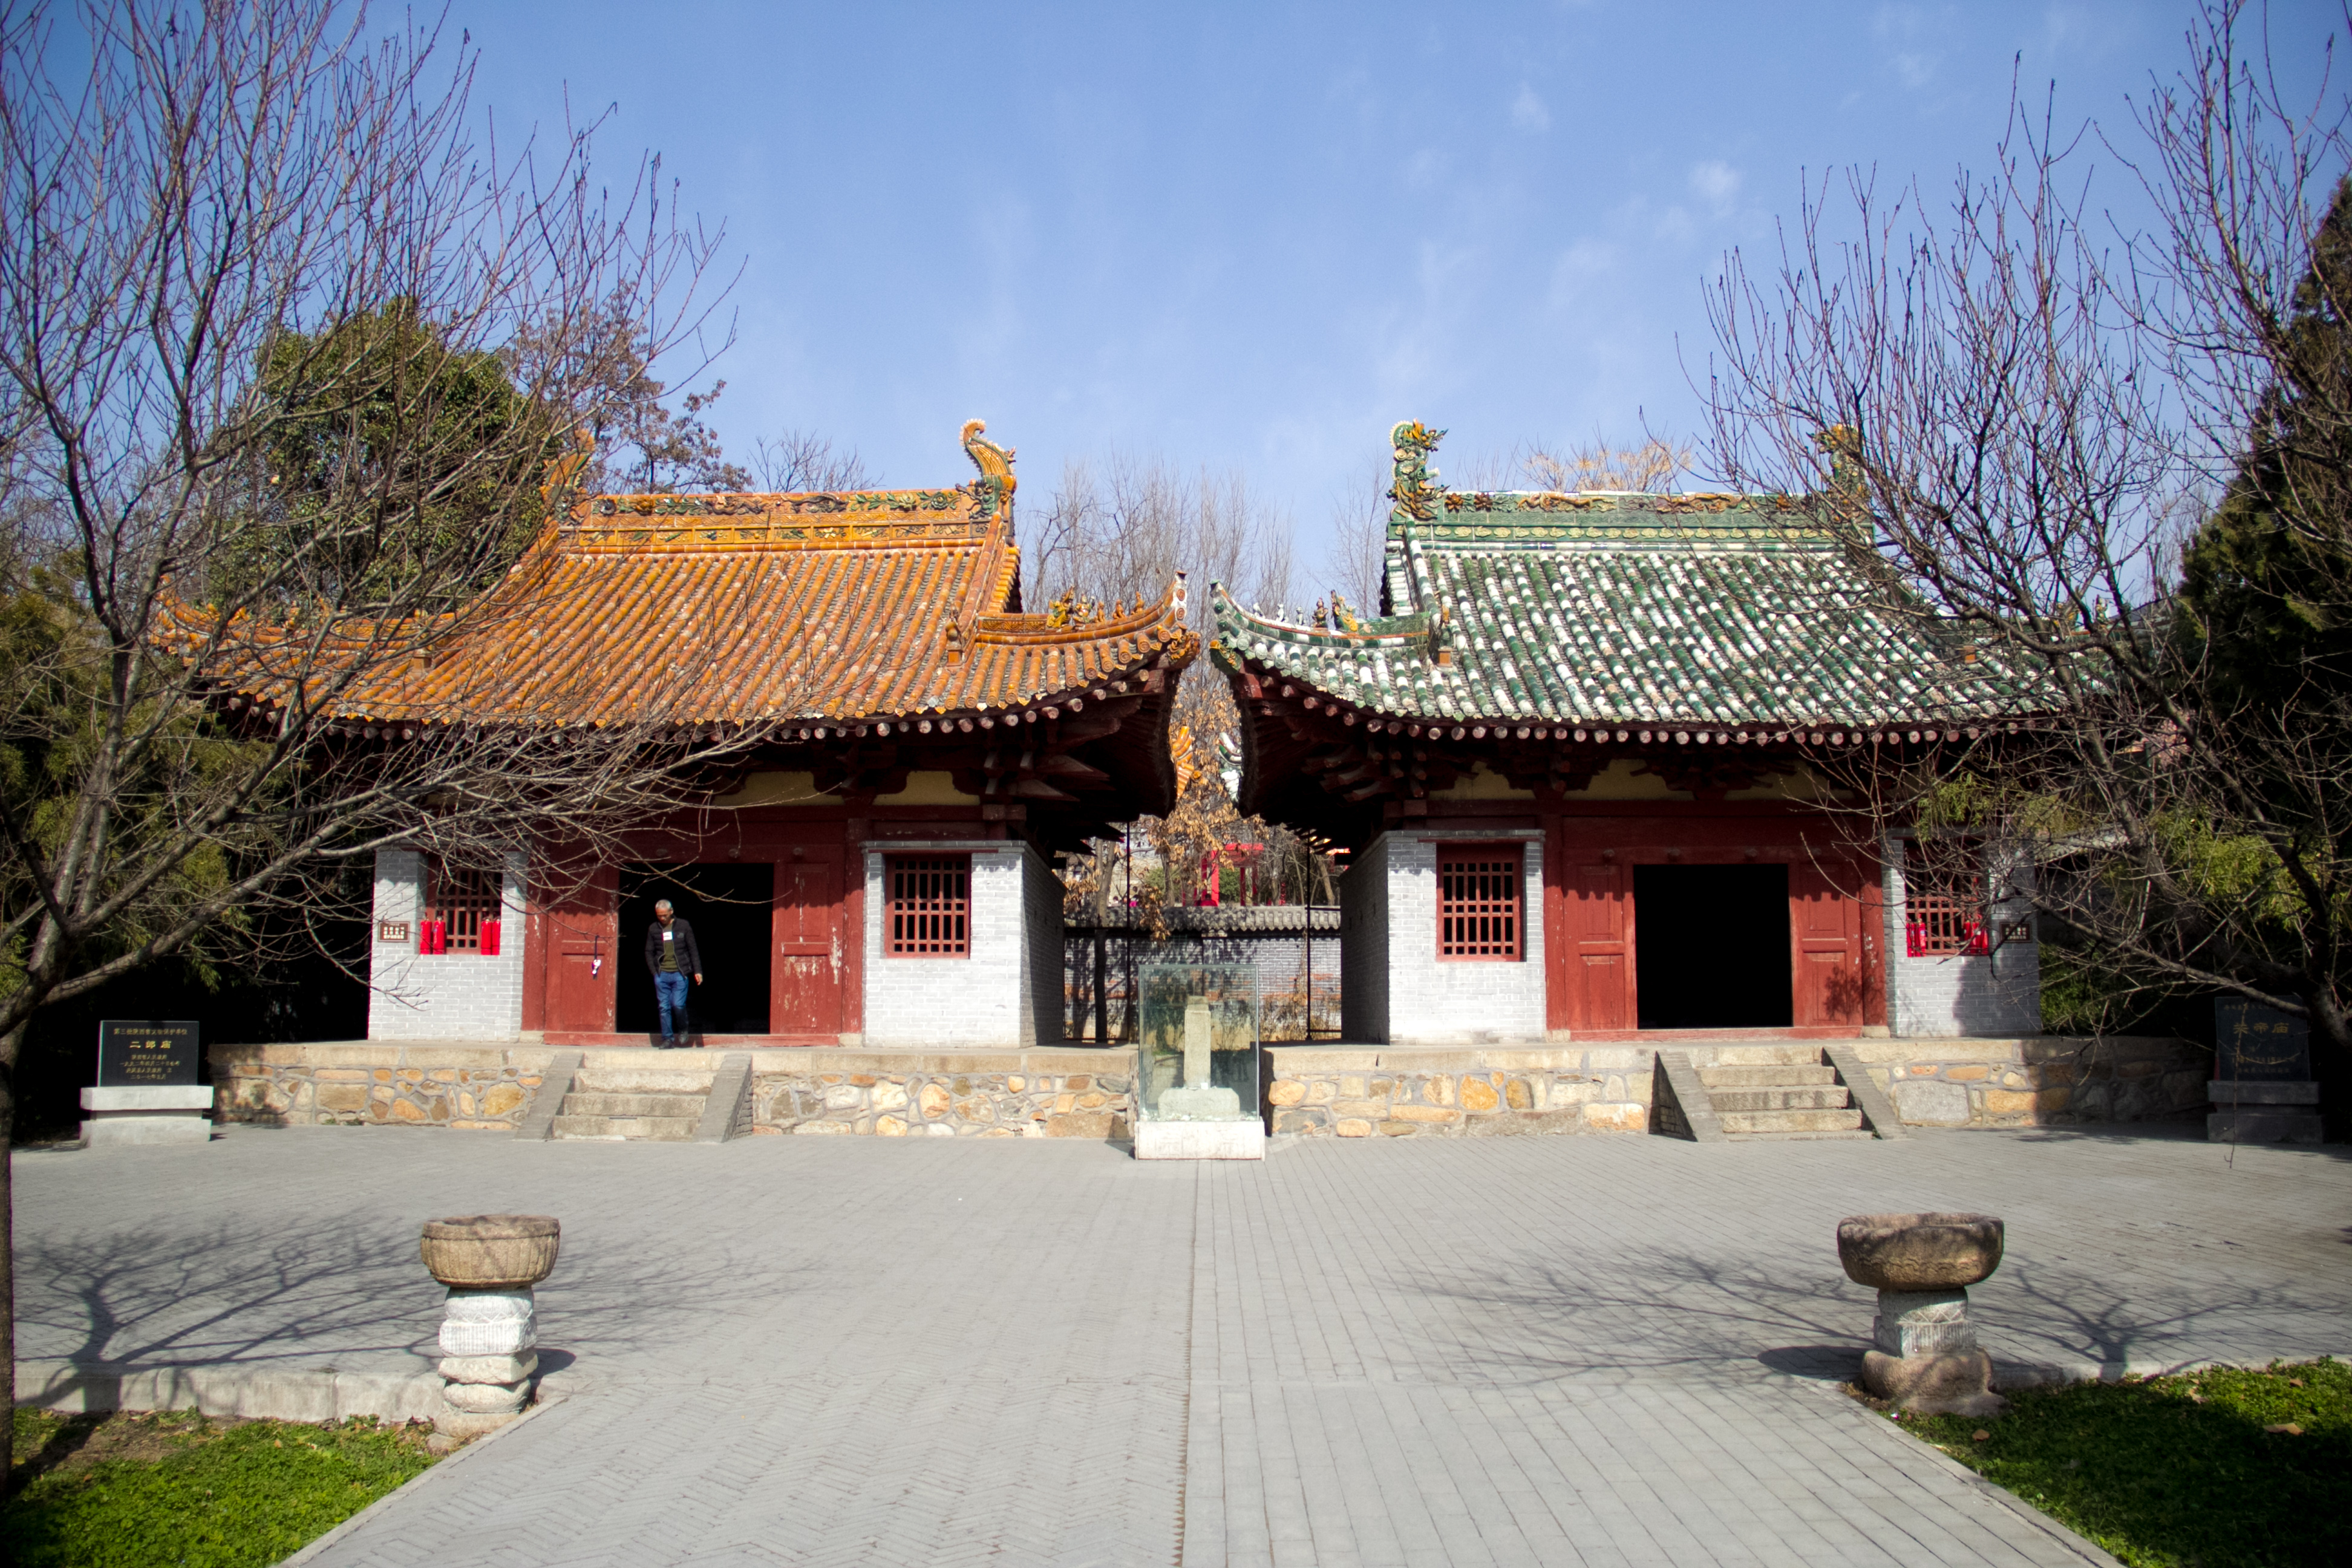 行走秦岭:棣花古镇二郎庙建于大安三年,是陕西现存唯—金代建筑